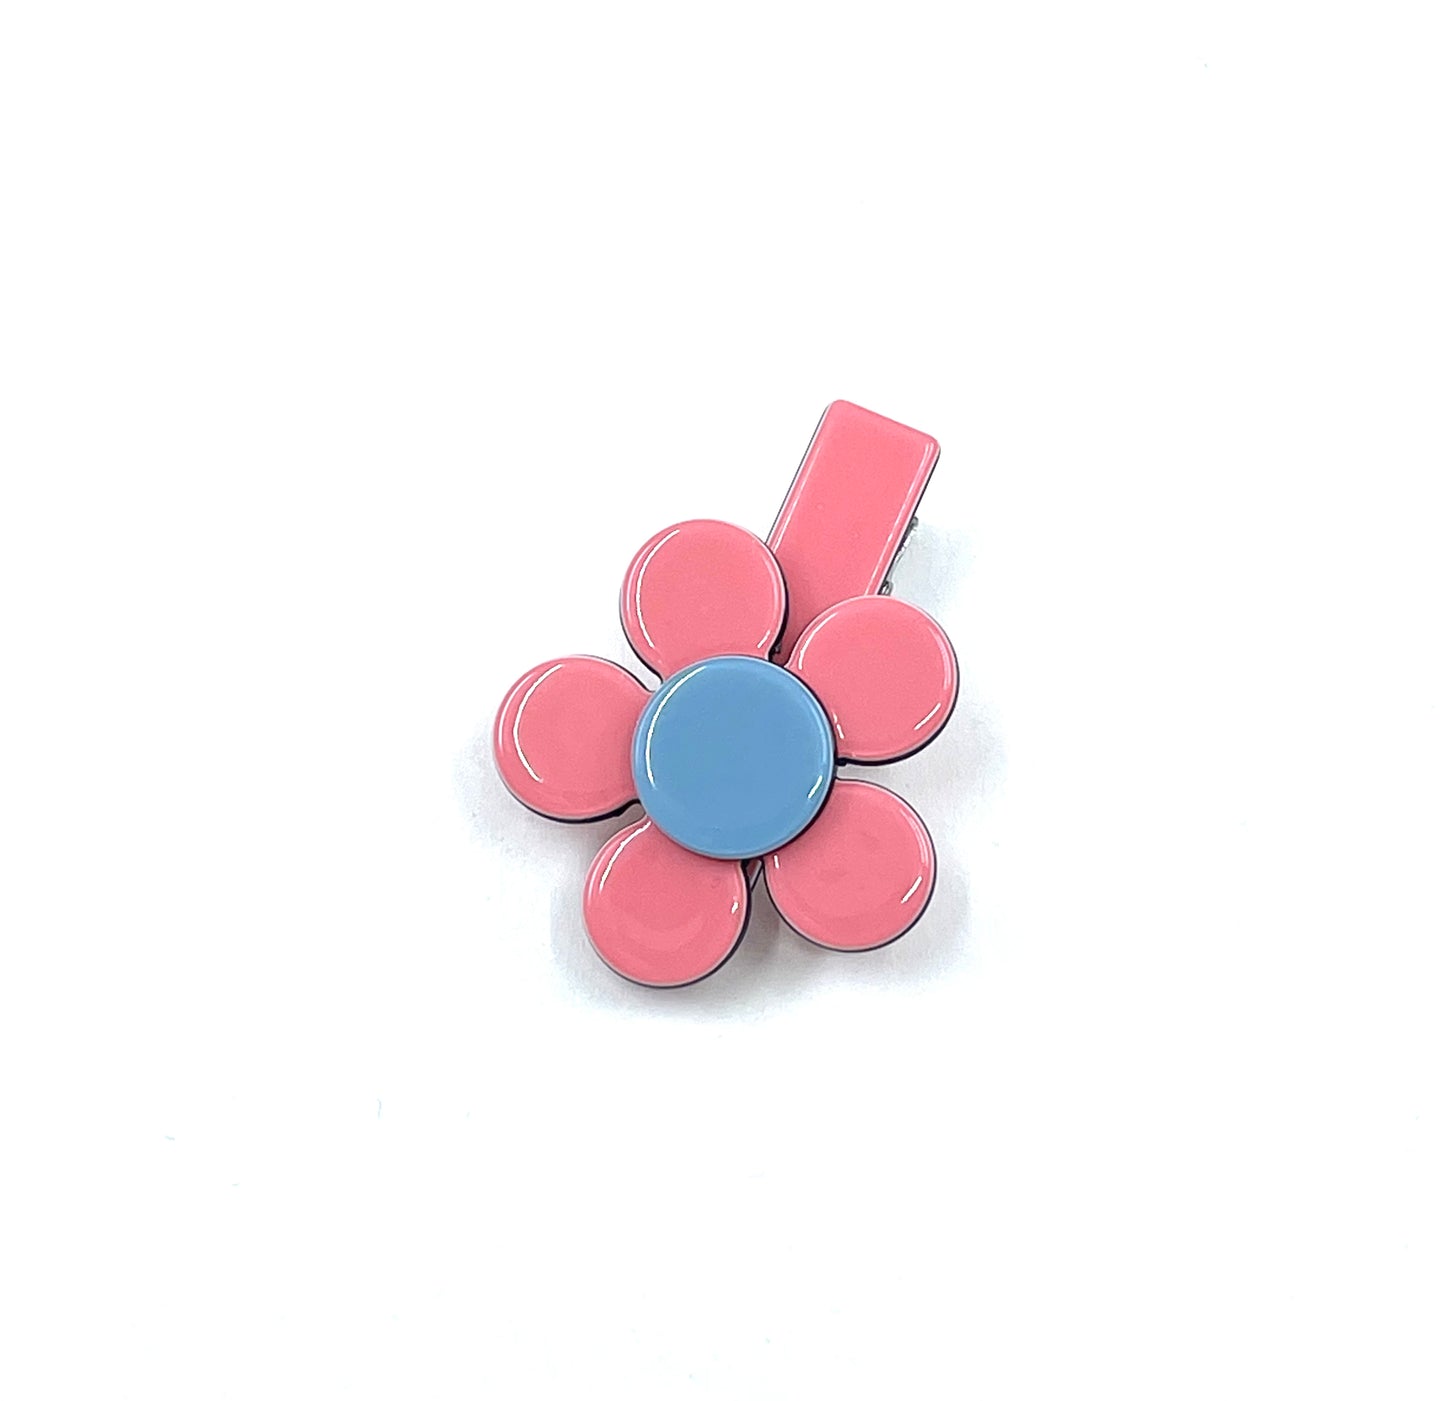 Daisy flower - sweet pink